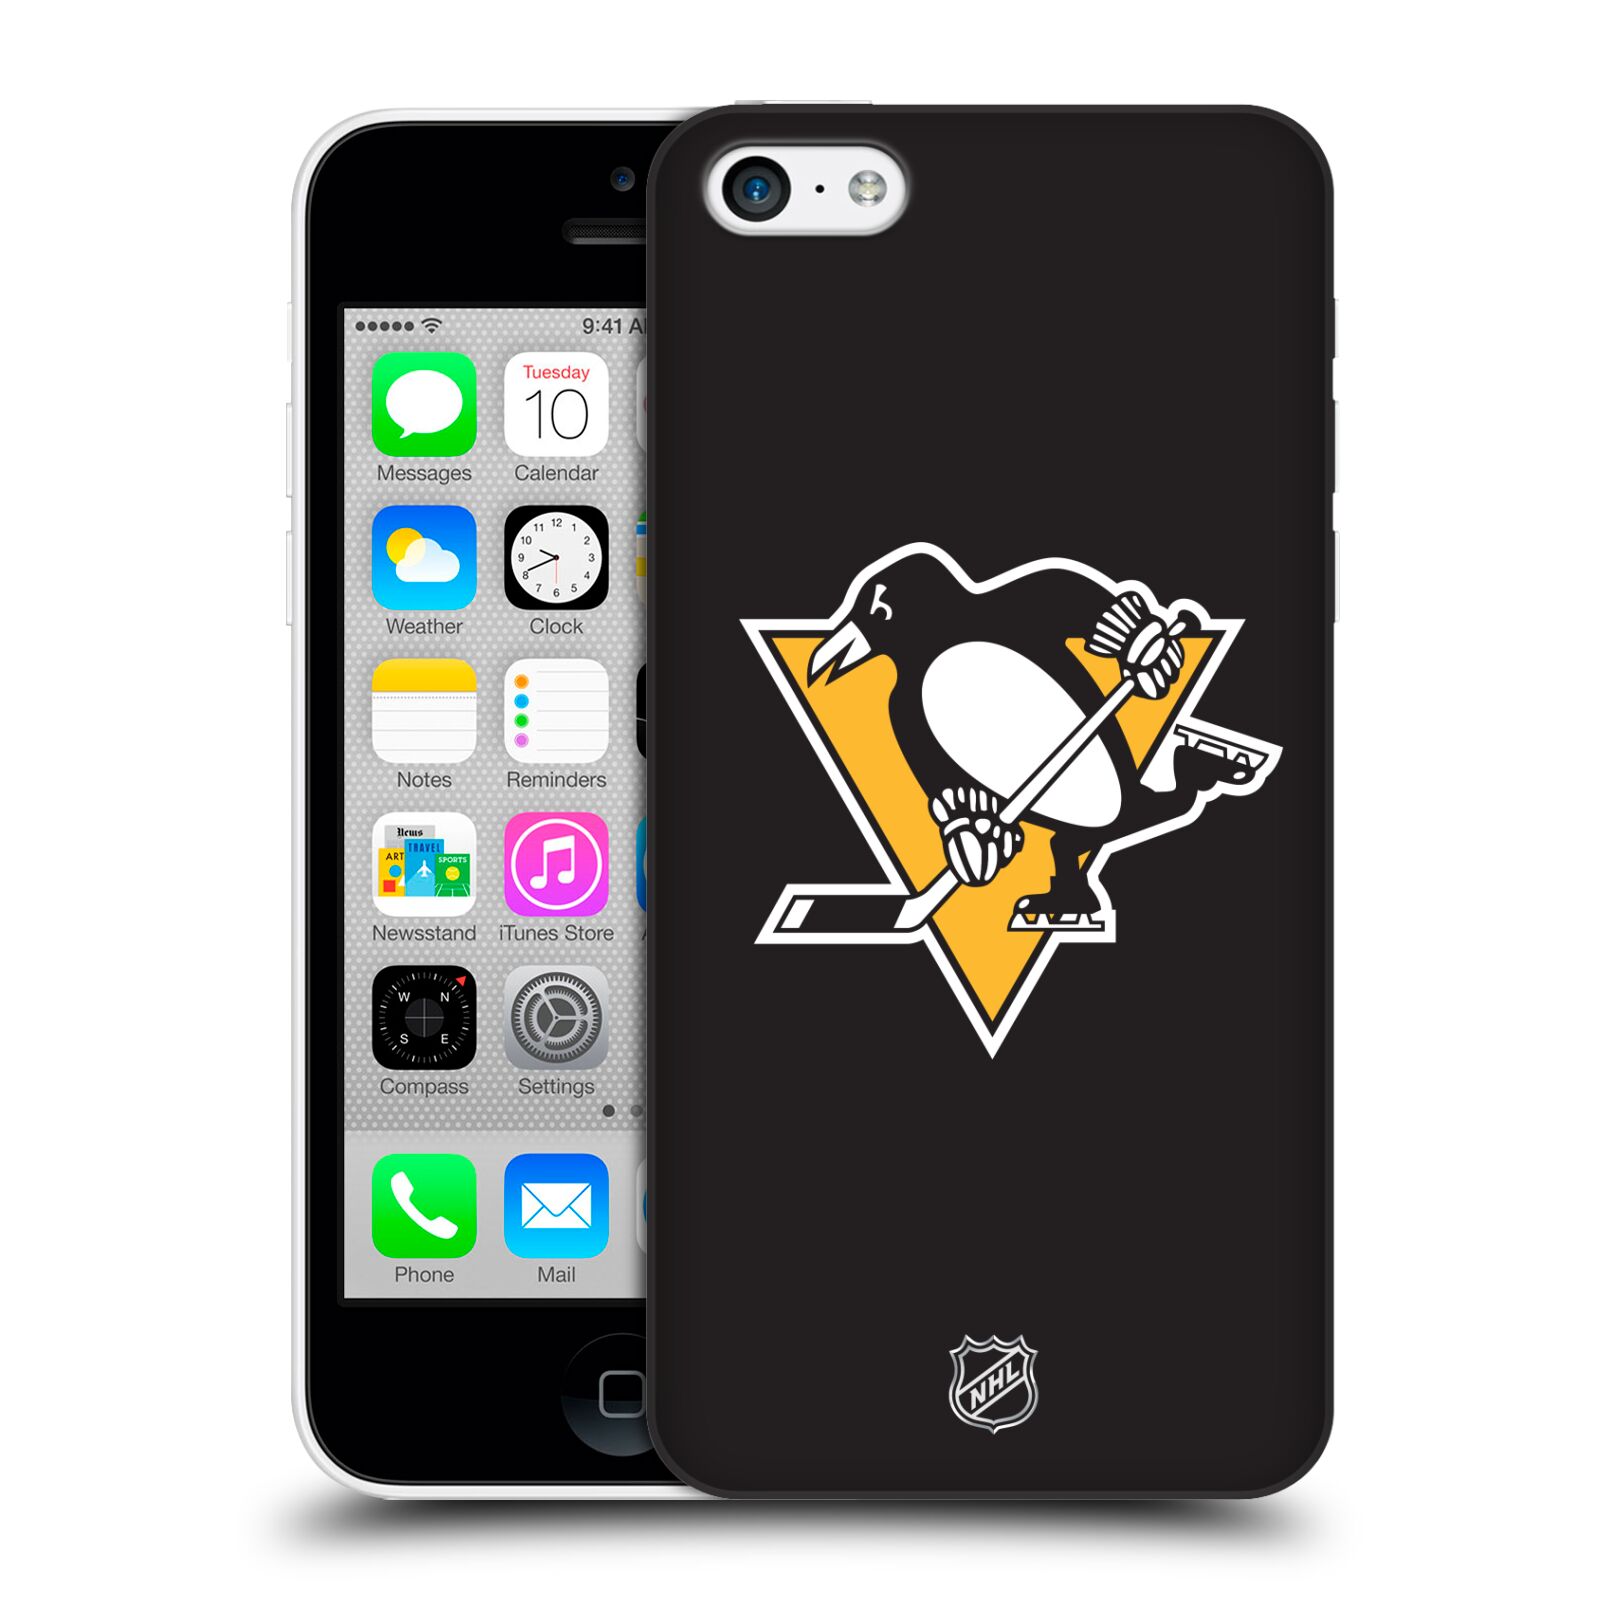 Pouzdro na mobil Apple Iphone 5C - HEAD CASE - Hokej NHL - Pittsburgh Penguins - černé pozadí znak